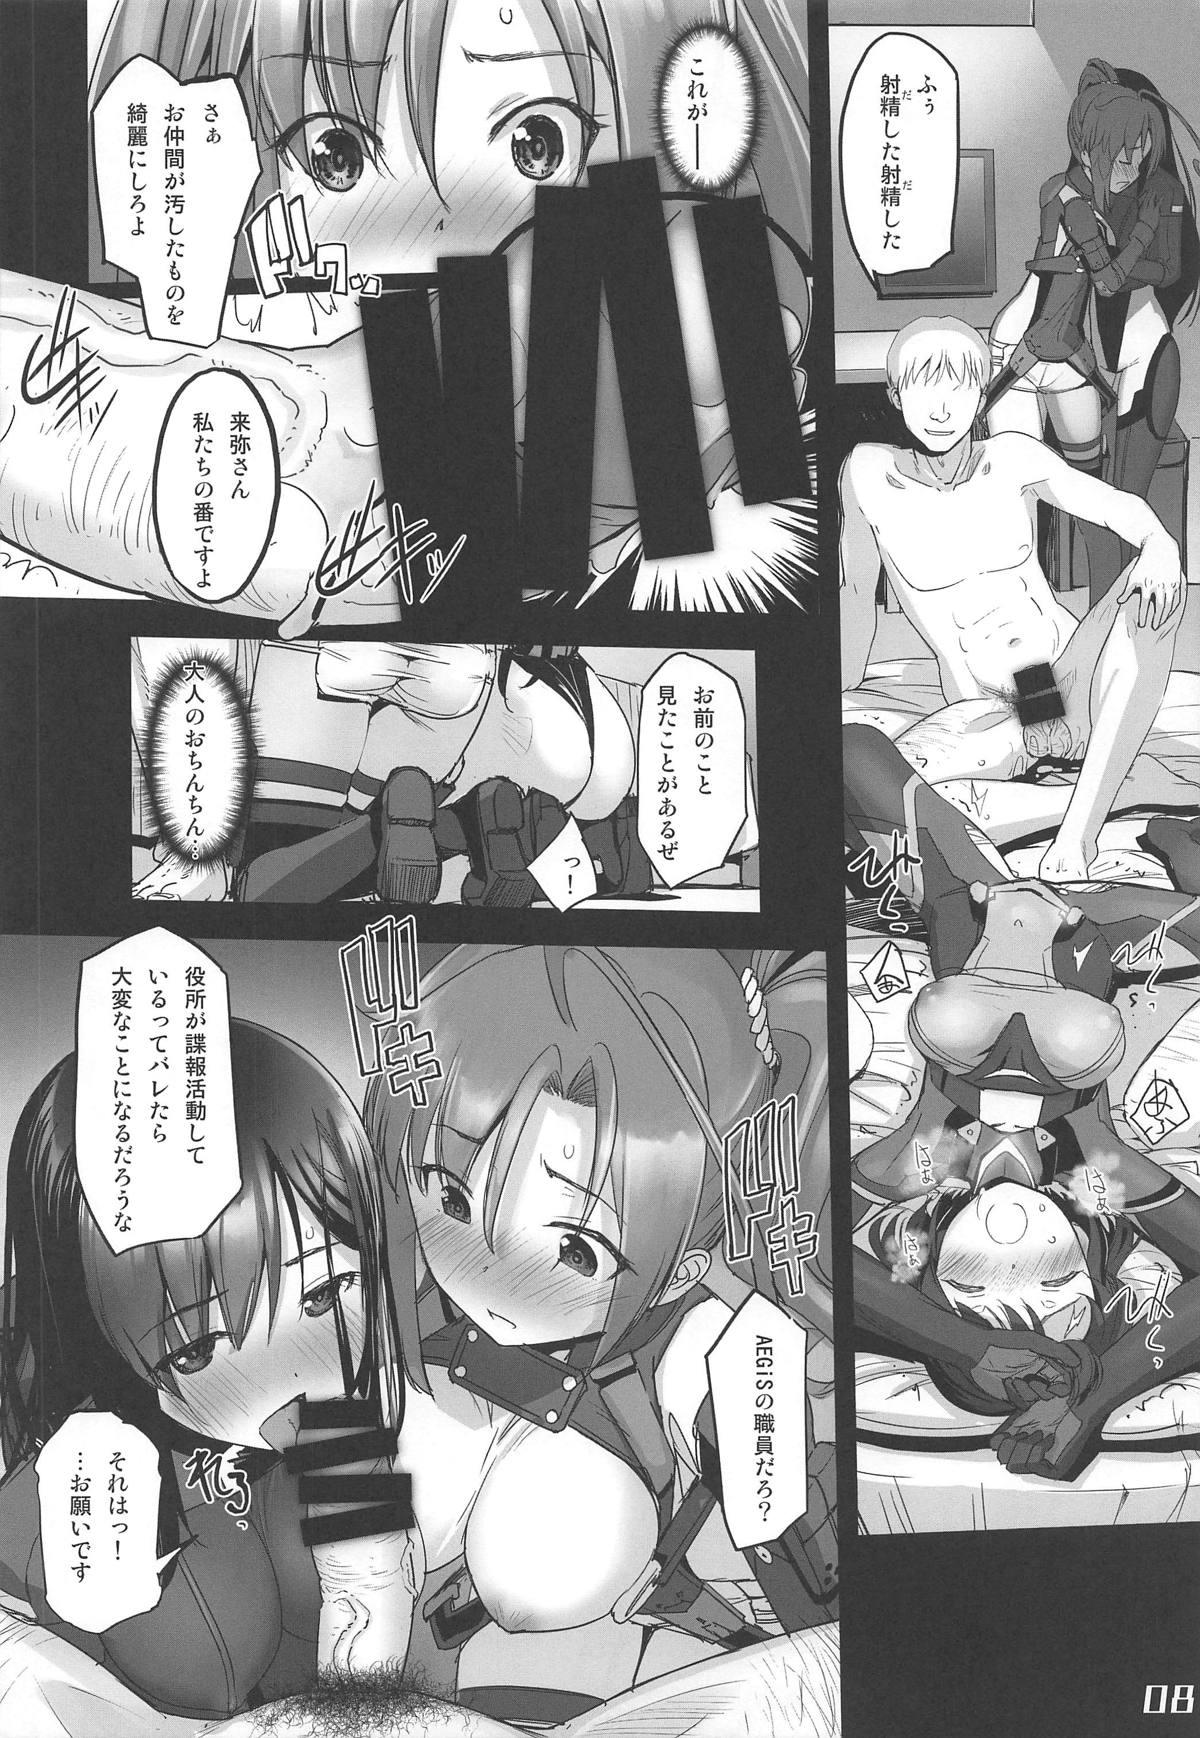 Cdzinha Narukozaka Seisakusho Engiroku 3 "Team: NPtS Hen" - Alice gear aegis Lesbos - Page 7